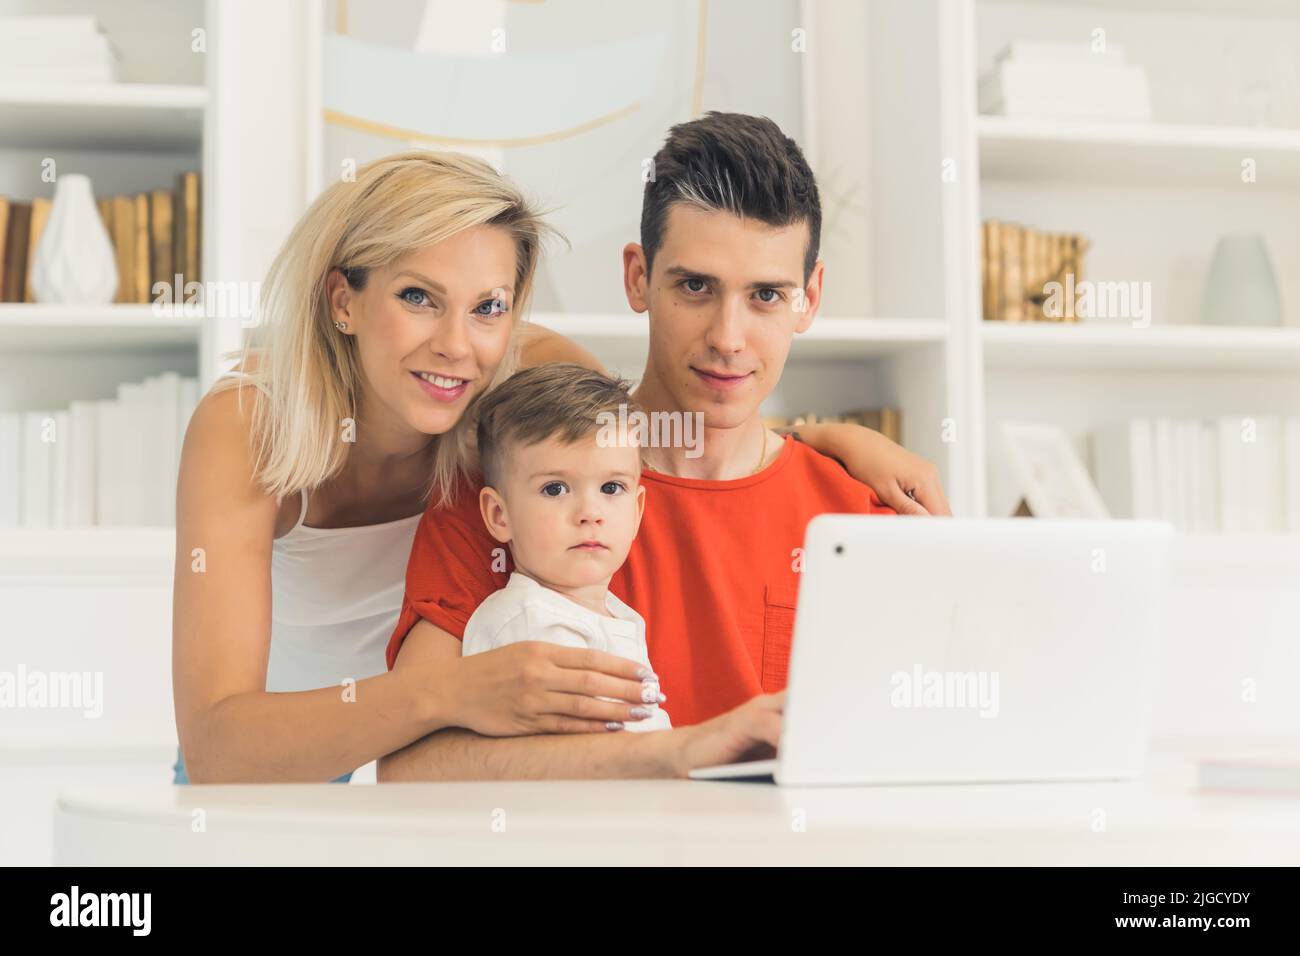 Joven pareja caucásica sentada frente al portátil en casa, primer plano medio, concepto de familia y tecnología. Fotografía de alta calidad Foto de stock